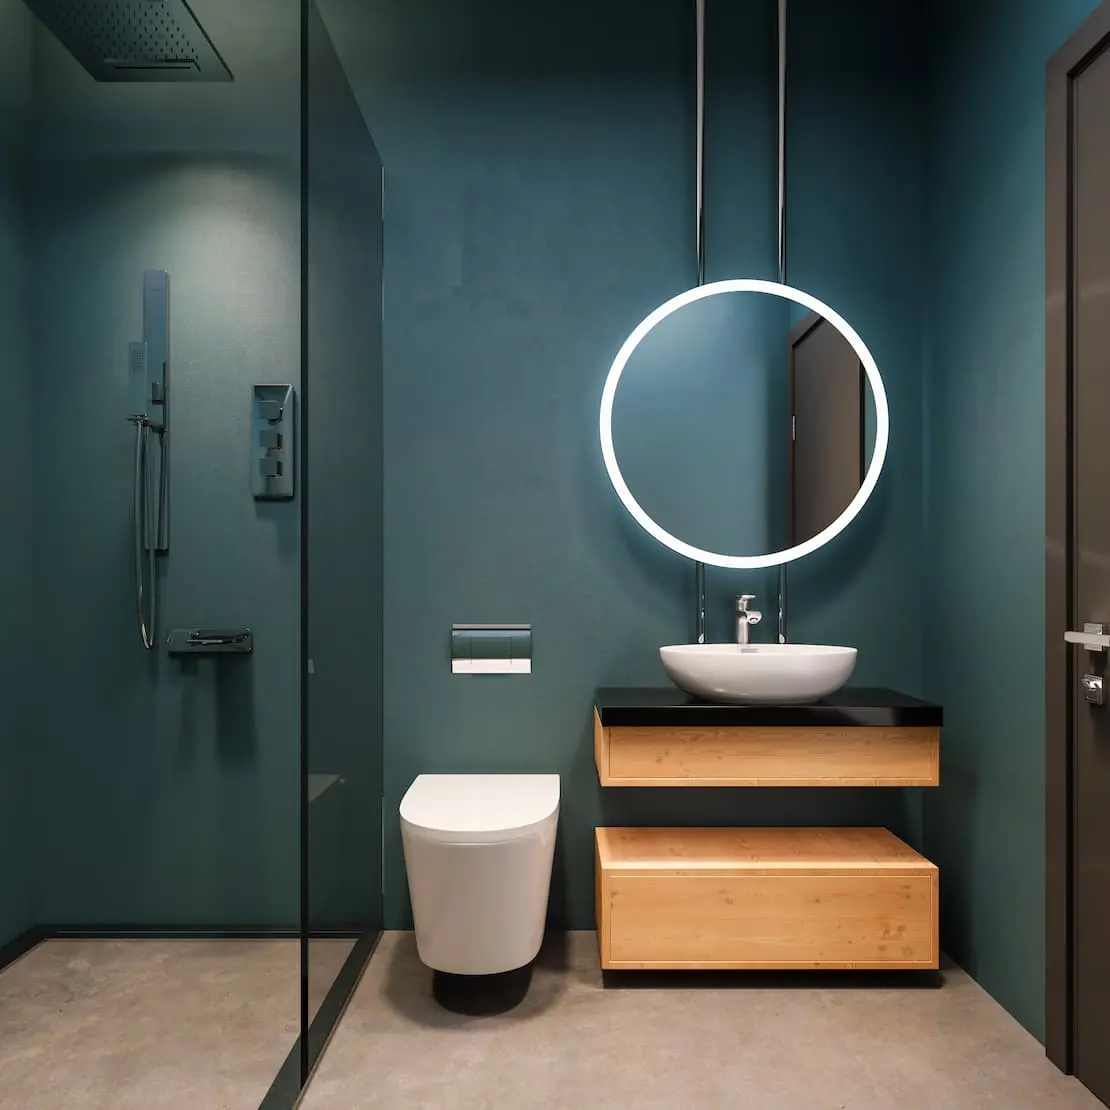 Μπάνιο με στρογγυλό φωτεινό καθρέπτη και τοίχο με χρώμα Navy Blue μικροτσιμέντου